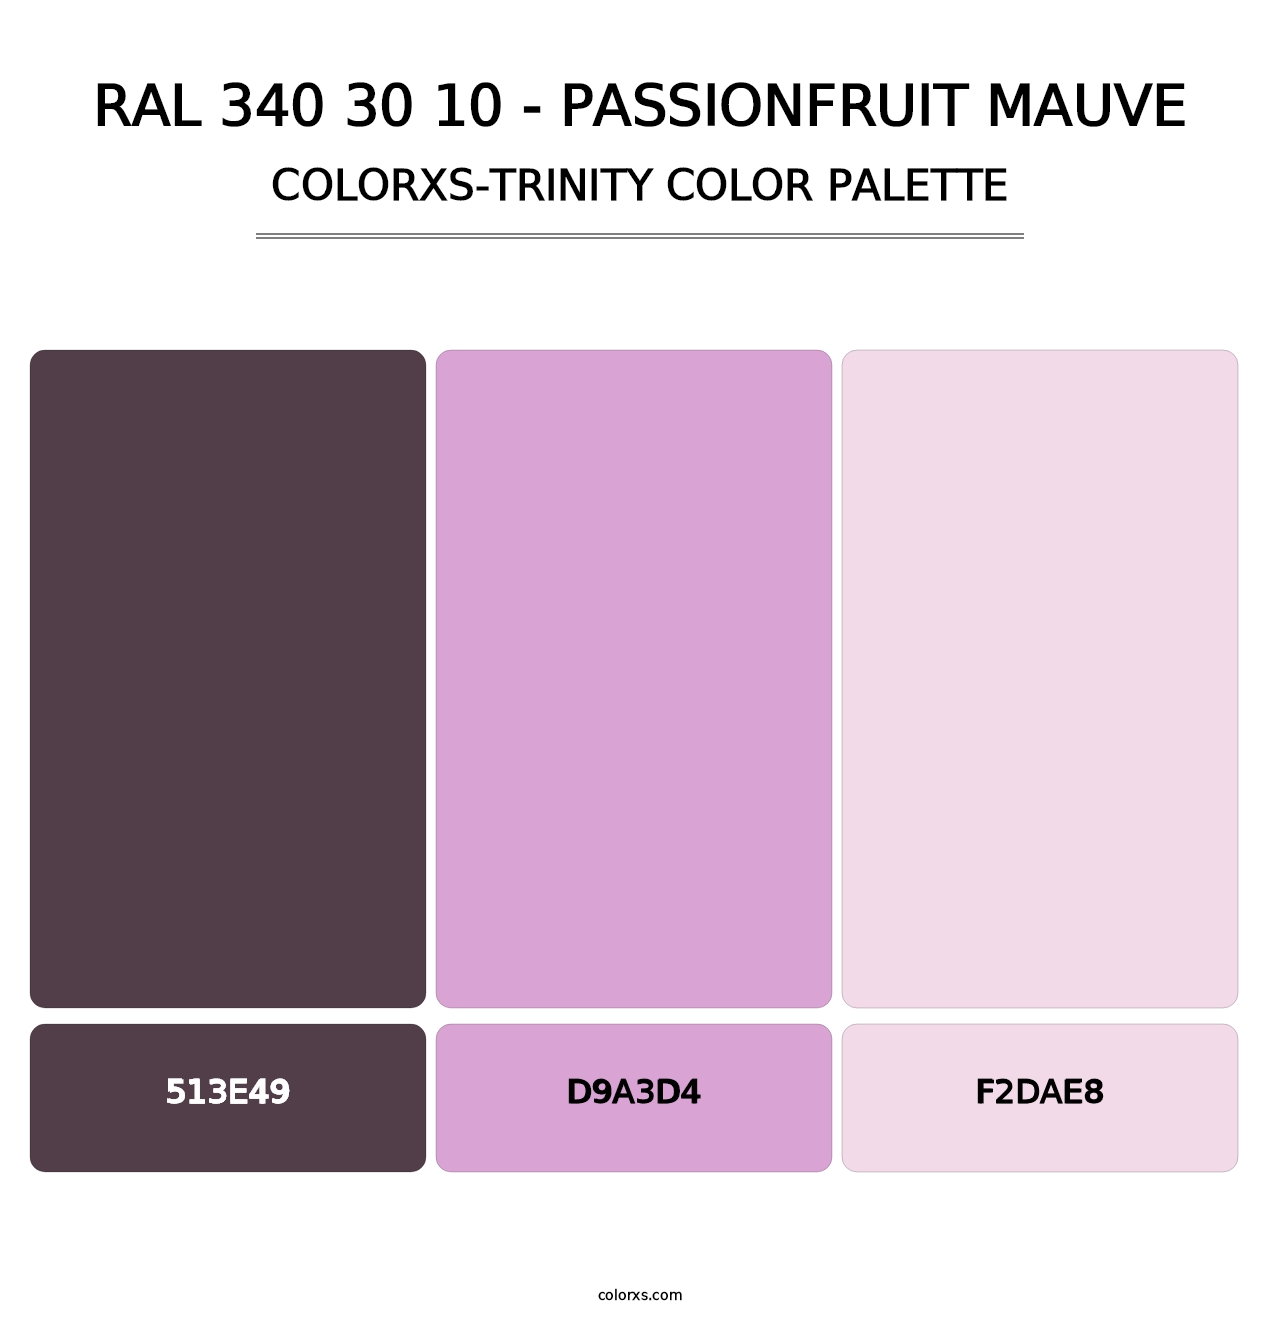 RAL 340 30 10 - Passionfruit Mauve - Colorxs Trinity Palette